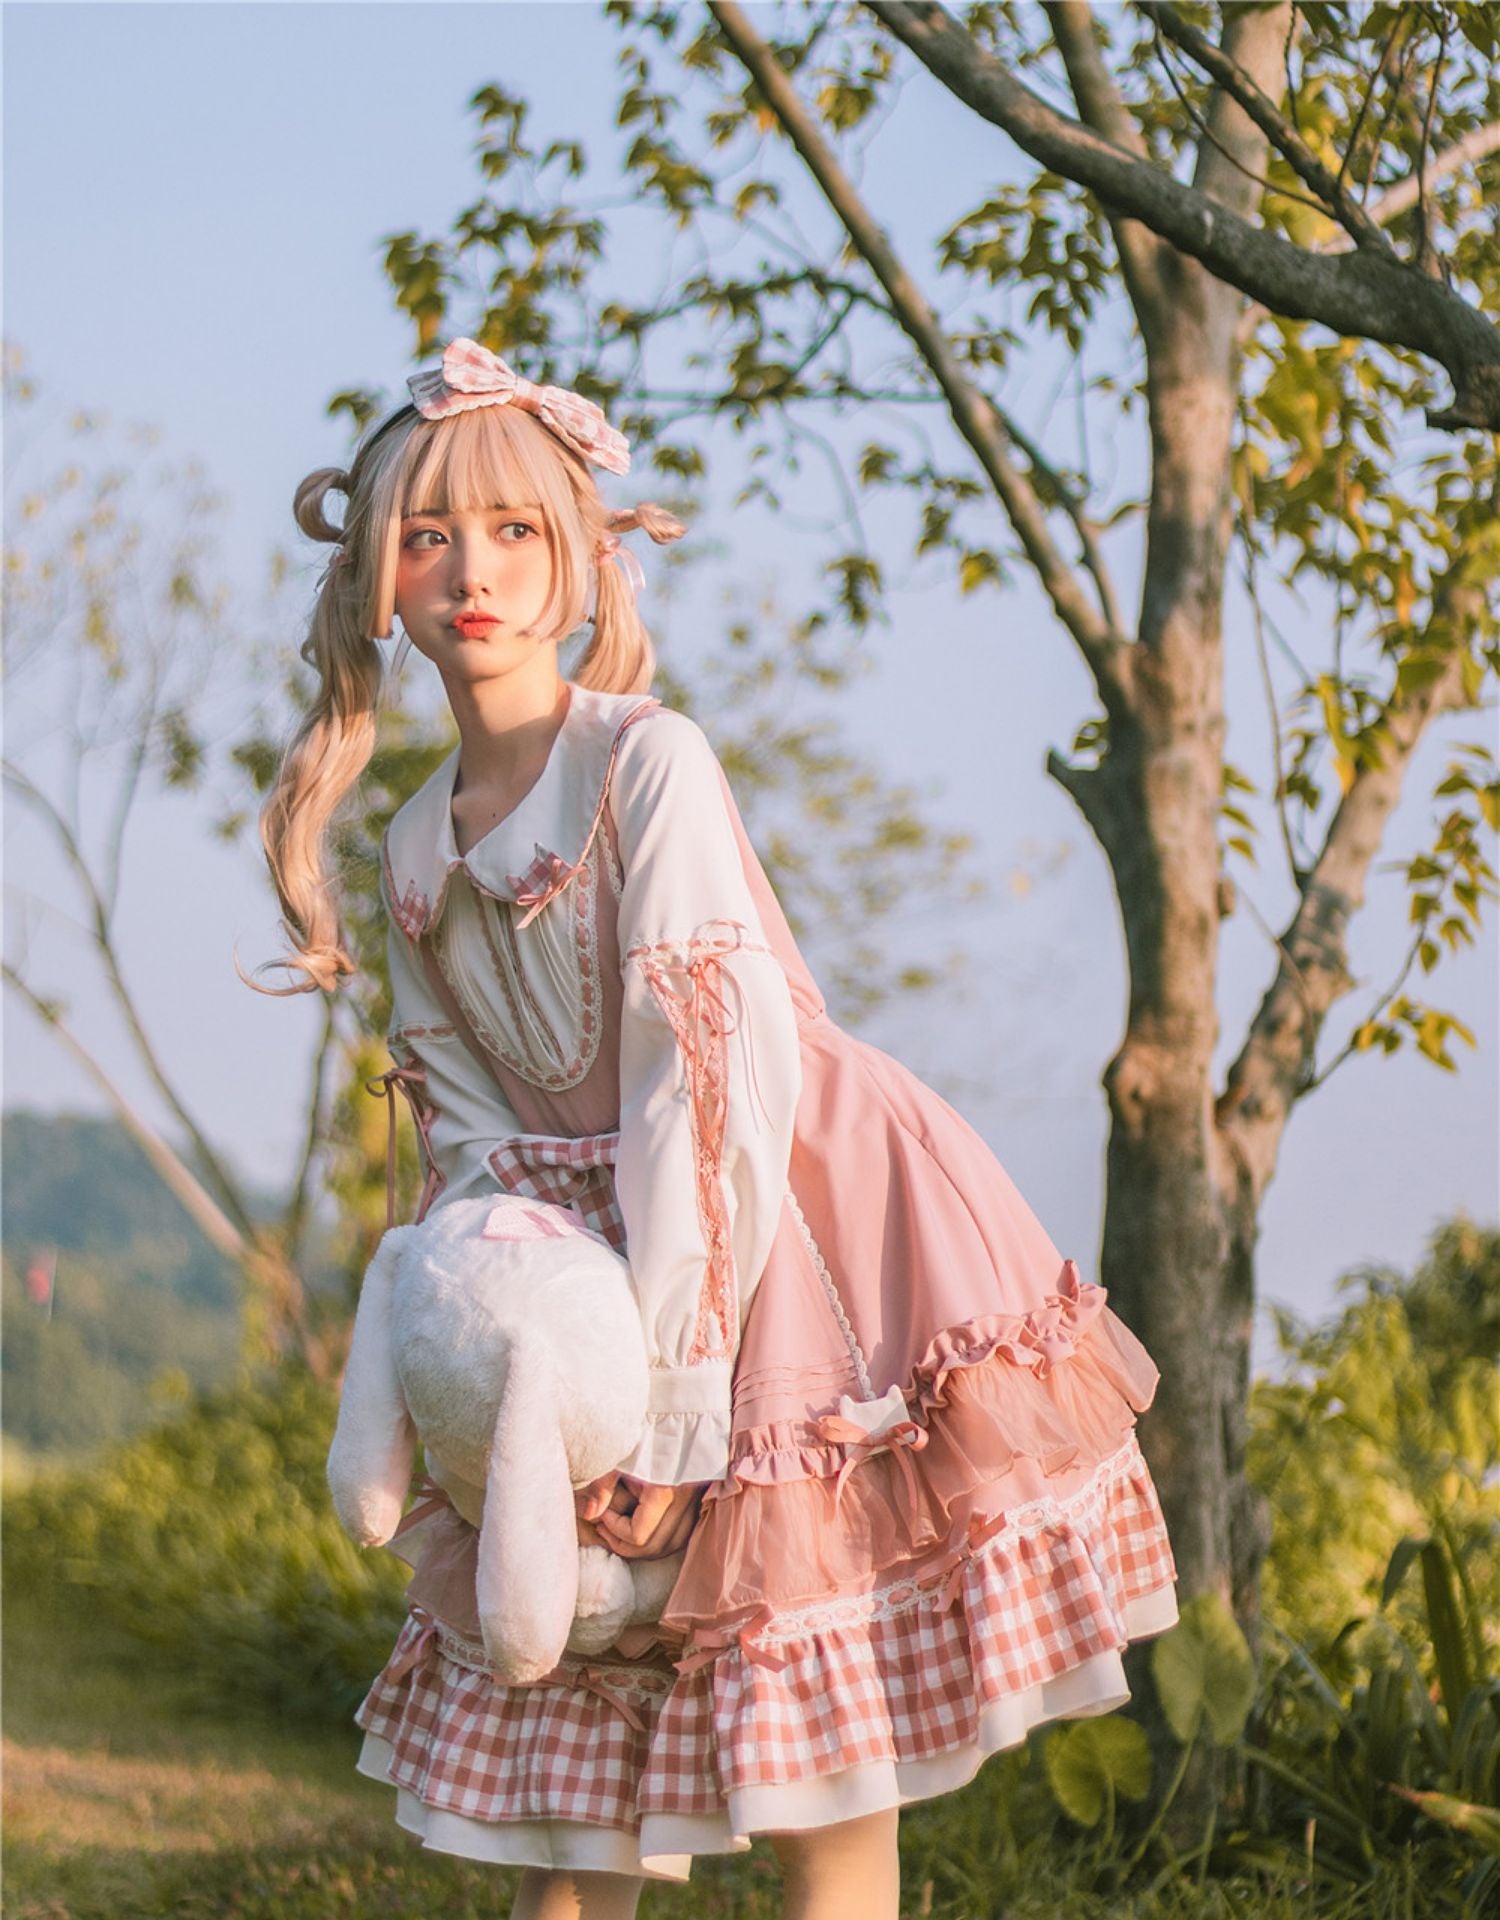 Kawaii Sweet Pink Plaid Lolita Dress - Kawaii Fashion Shop